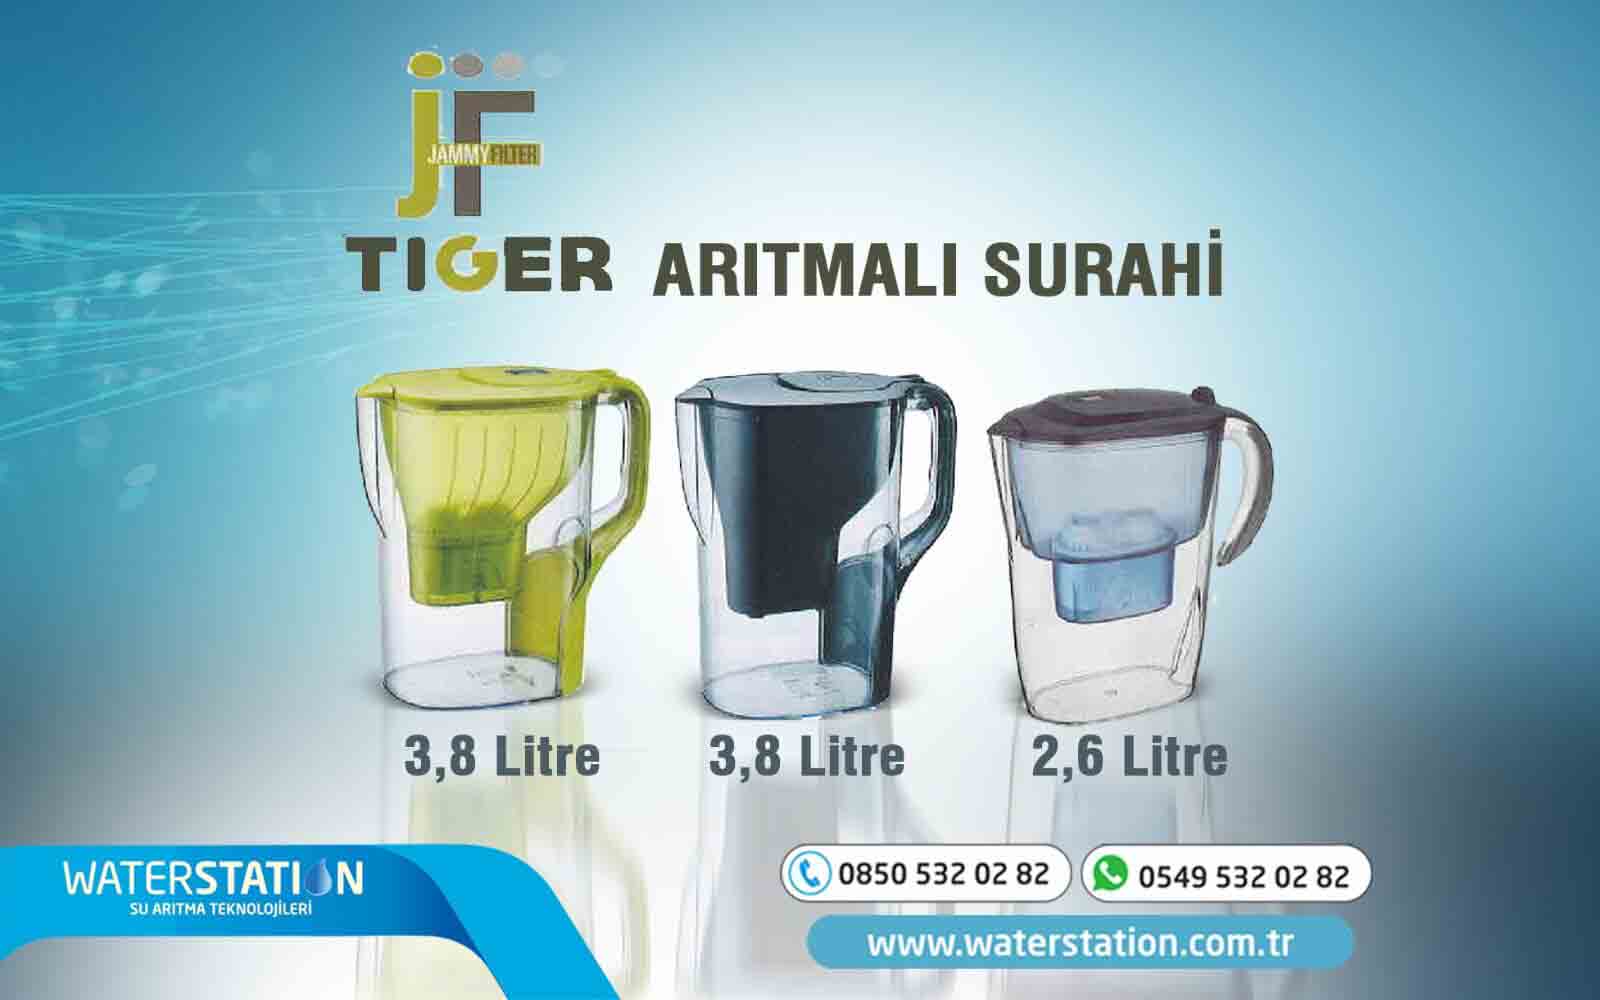 jf-tiger-aritmali-surahi